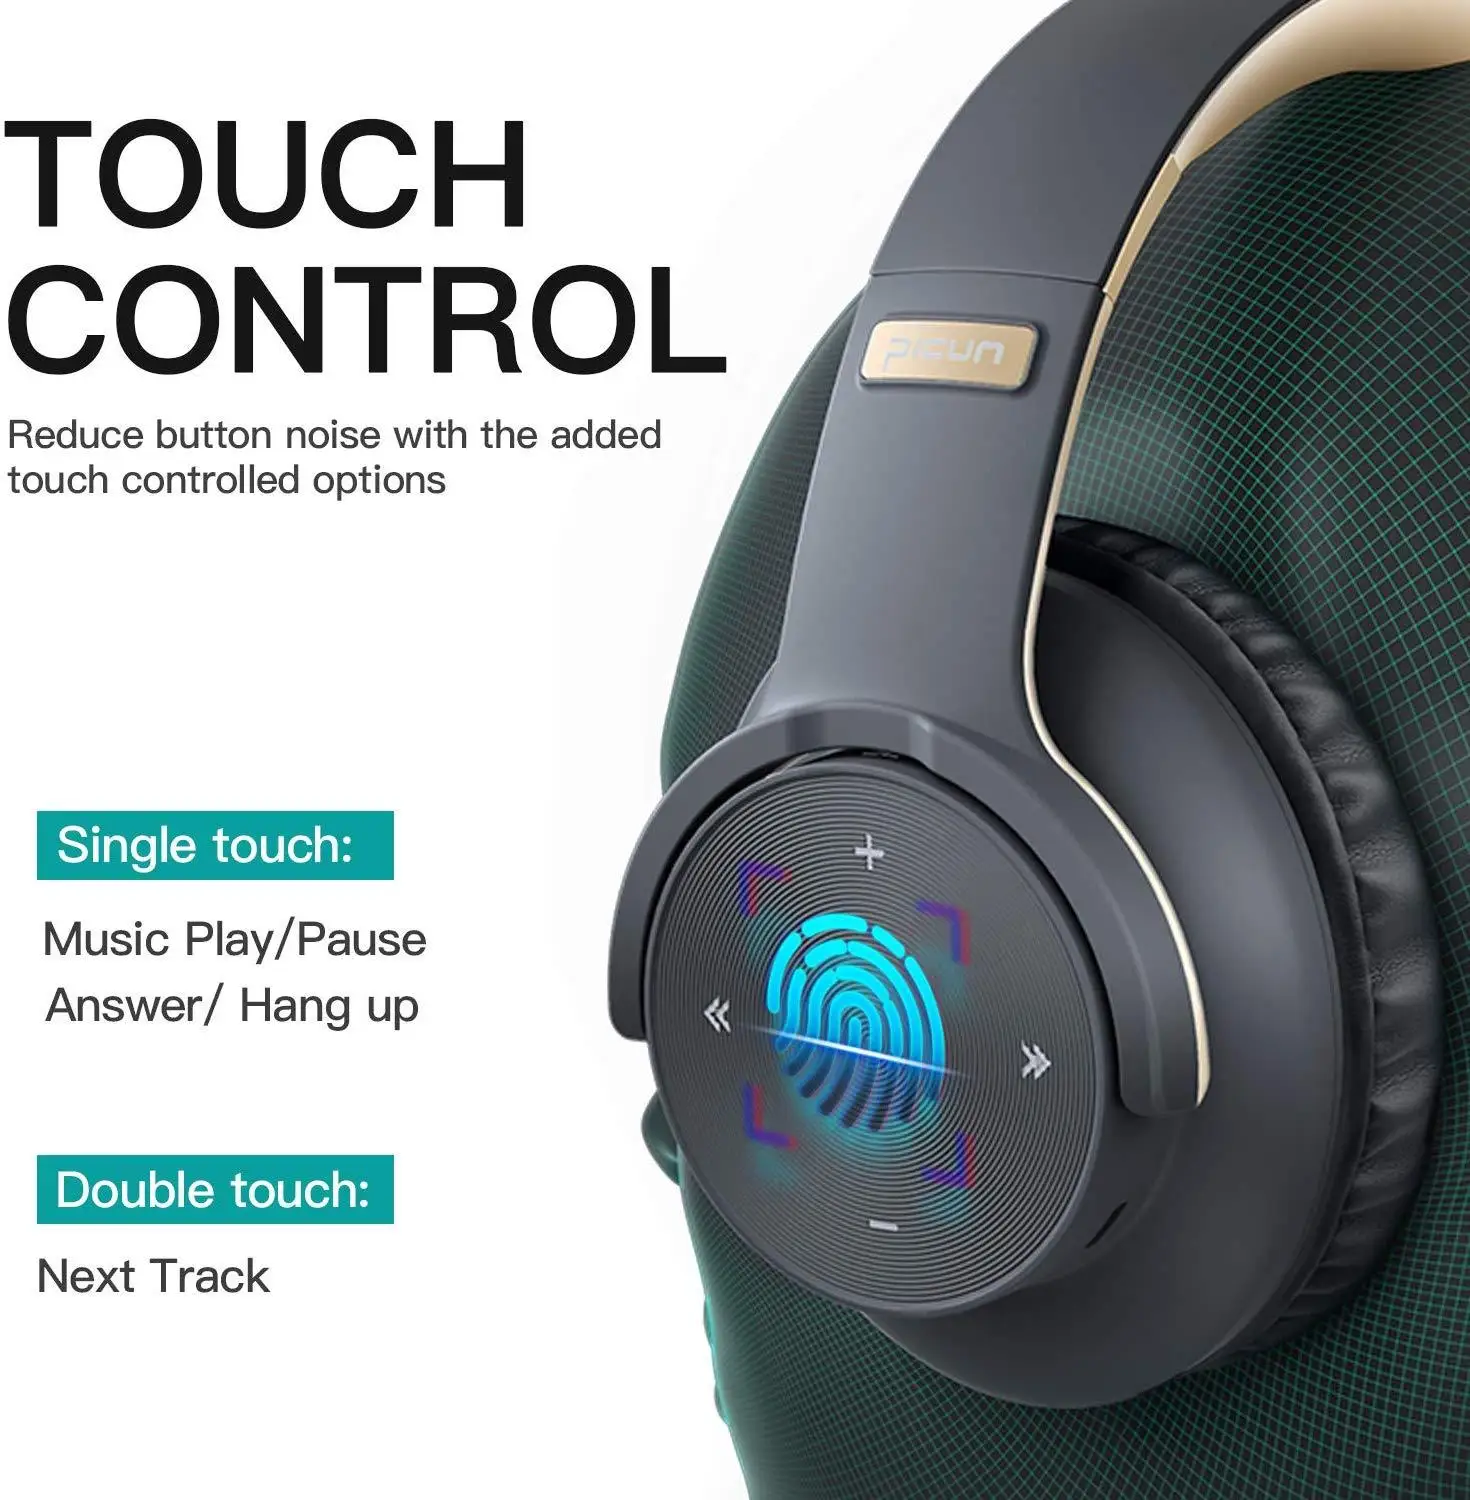 Picun B8 Fones de ouvido sem Fio Bluetooth 5.0 Fone de ouvido 40 H tempo de reprodução de Controle de Toque Através de Ouvido Fone de ouvido com Microfone TF Fone de ouvido Estéreo para